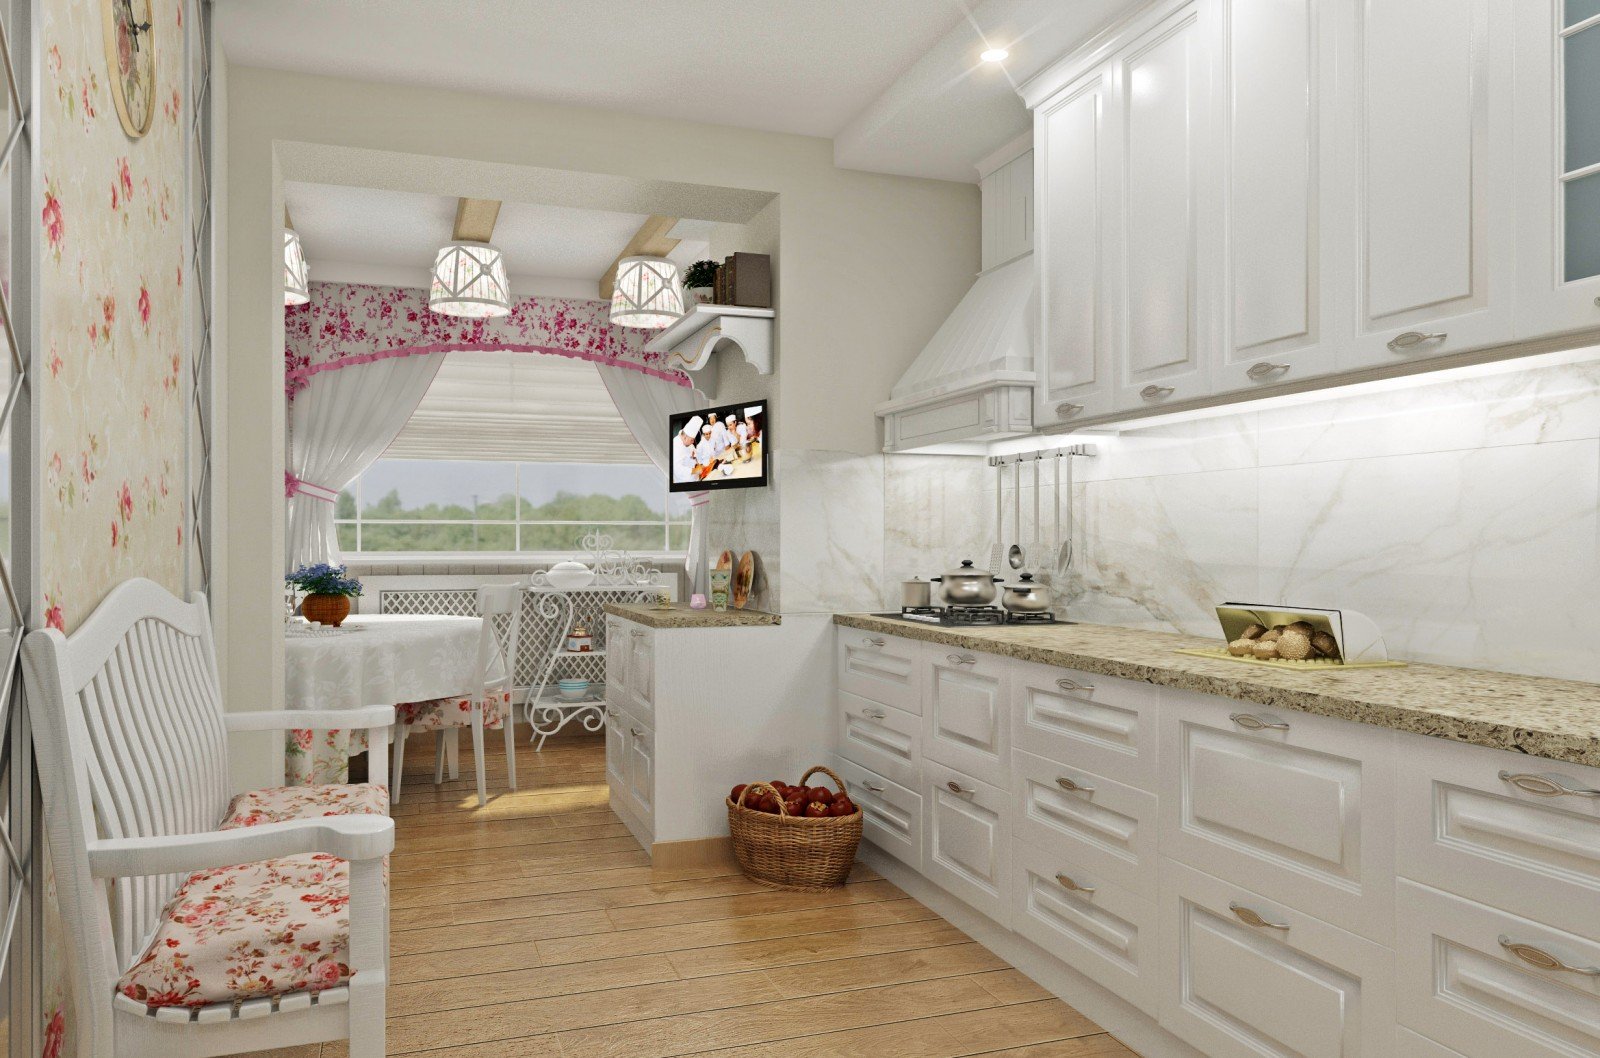 Мятная кухня: дизайн и особенности оформления интерьера! 18 фото кухни мятного цвета!